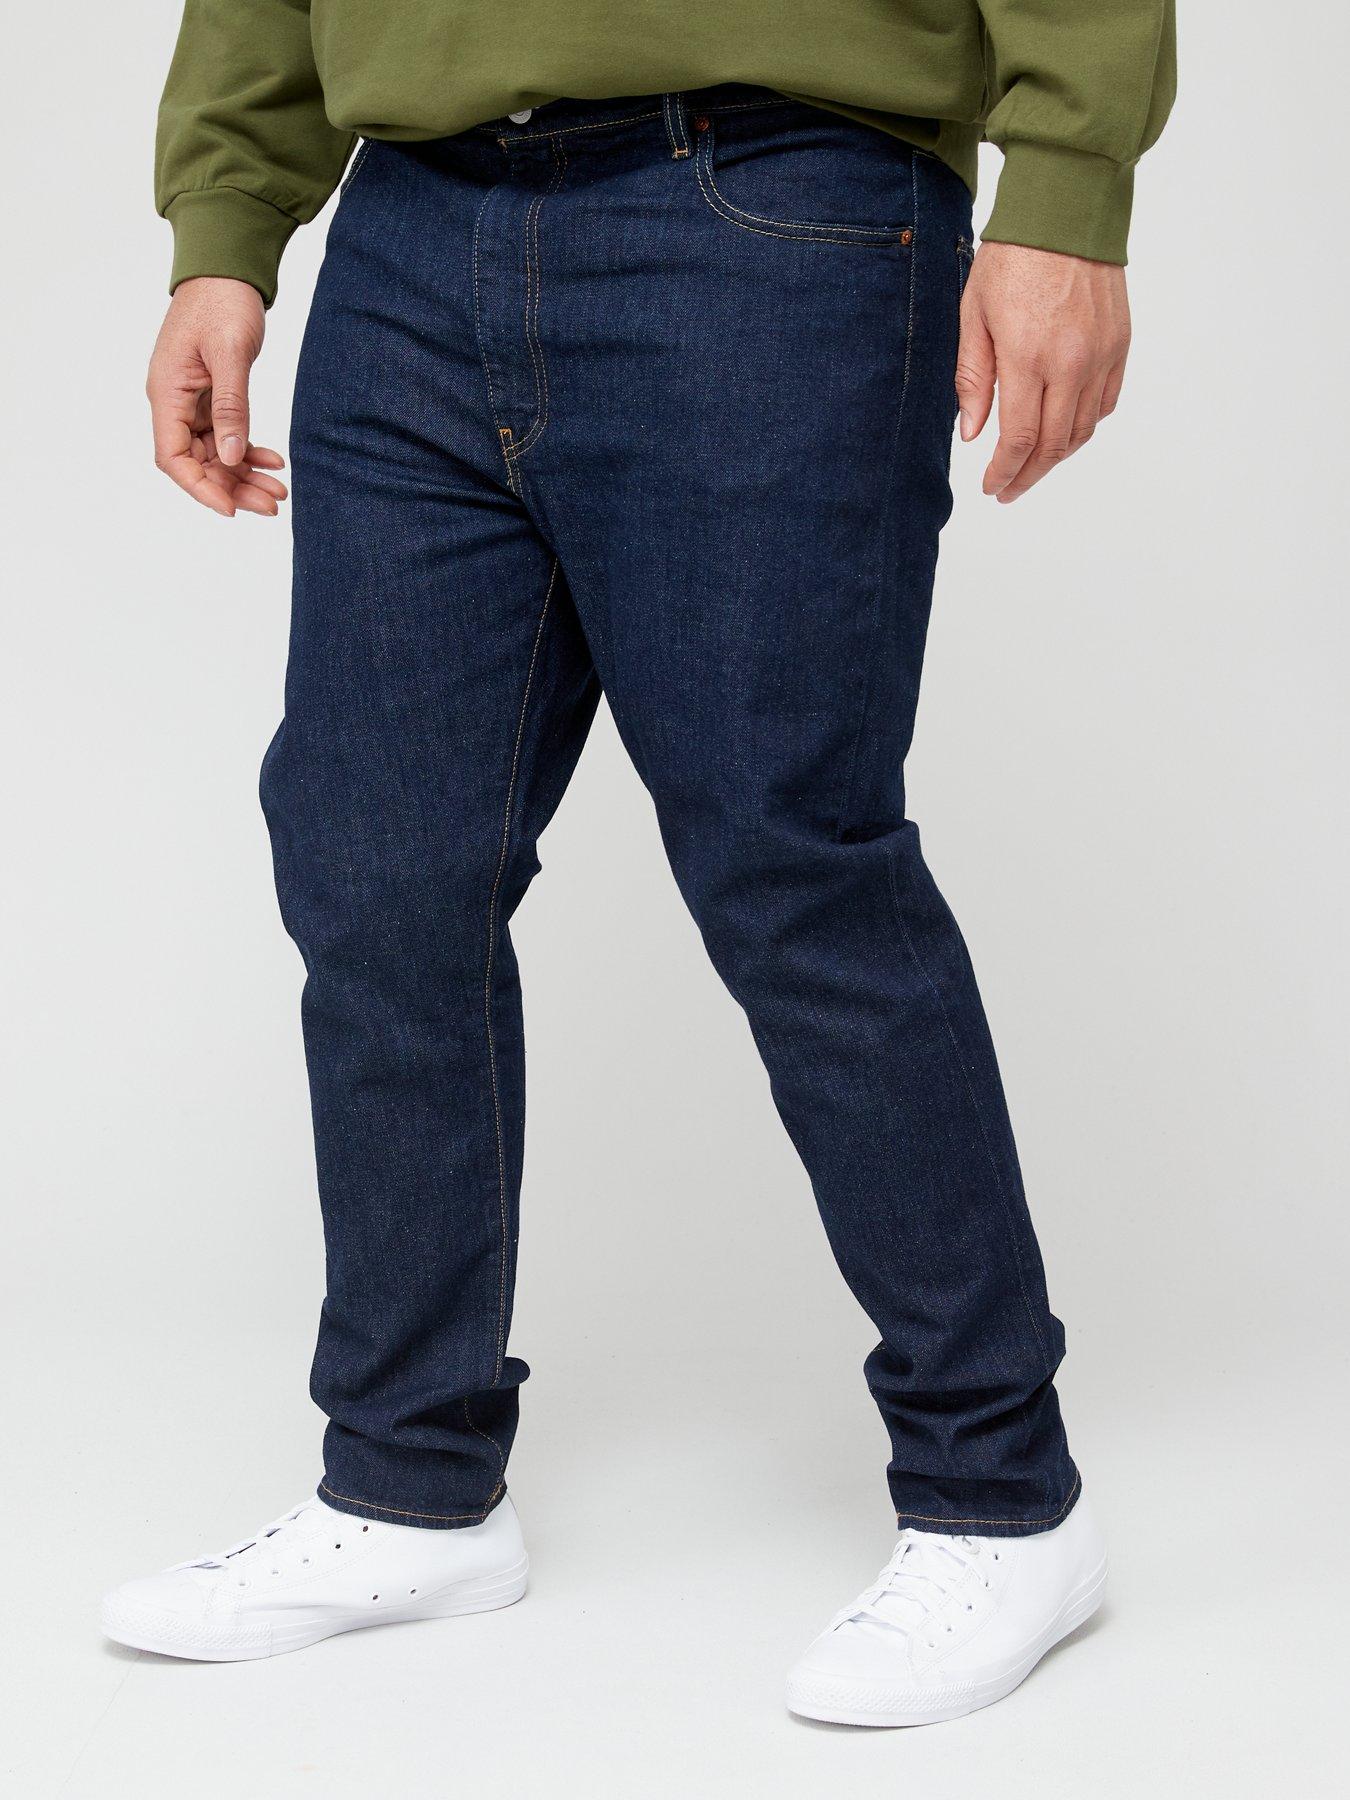 Levi's Big & Tall 512 Slim Taper Fit Jeans - Dark Wash